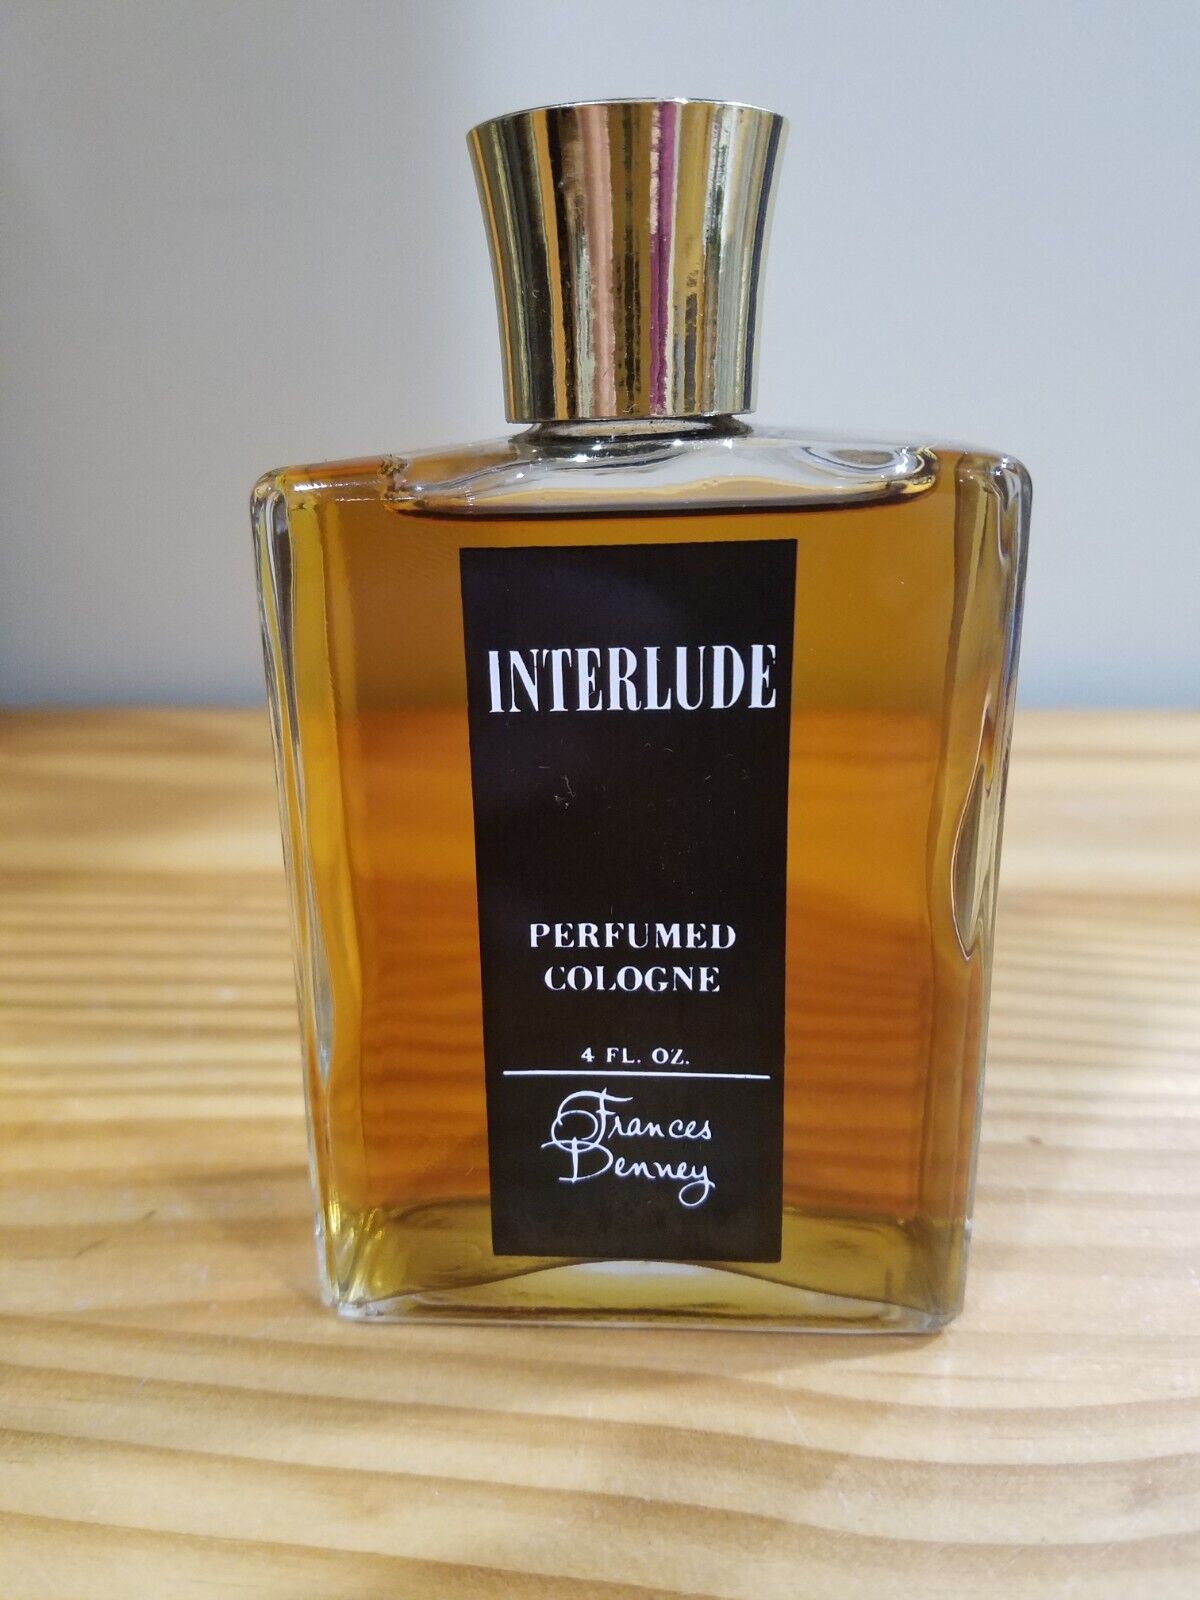 Vintage Frances Denney Perfumed Cologne Splash Interlude 4 oz 